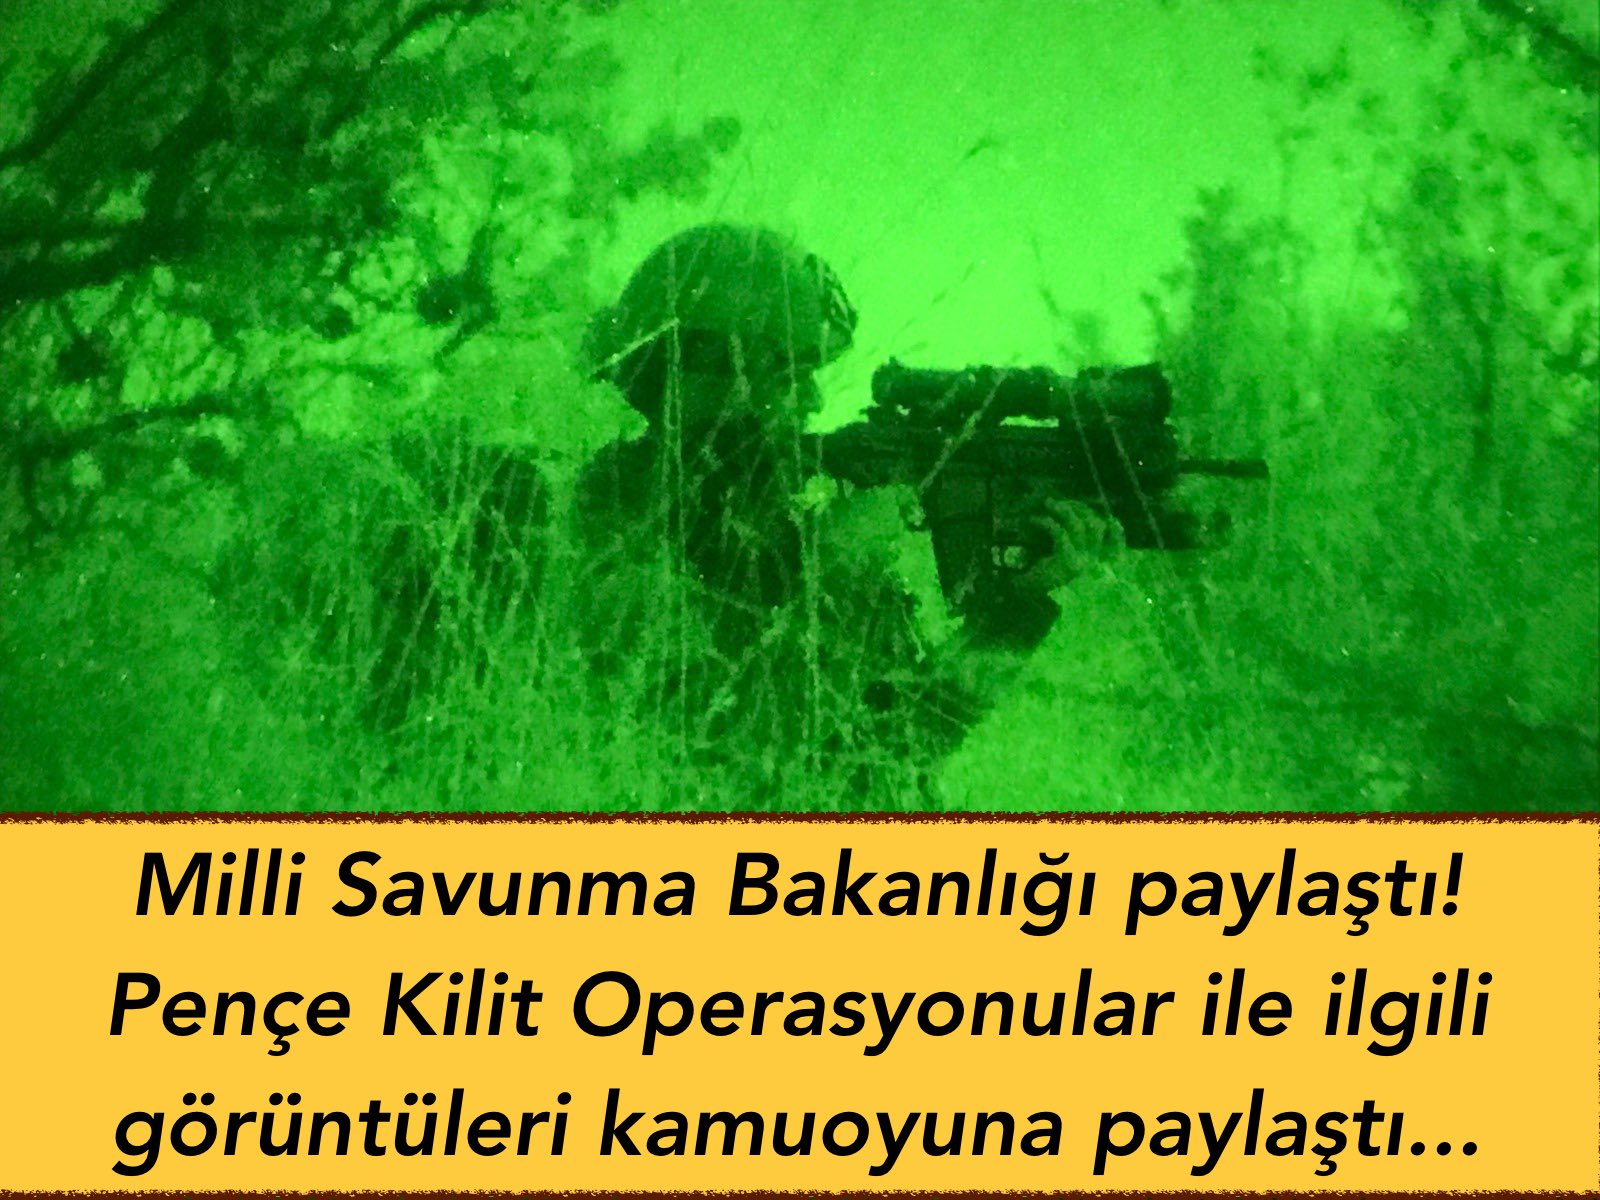 Milli Savunma Bakanlığı paylaştı! Pençe Kilit Operasyonular ile ilgili görüntüleri kamuoyuna paylaştı…